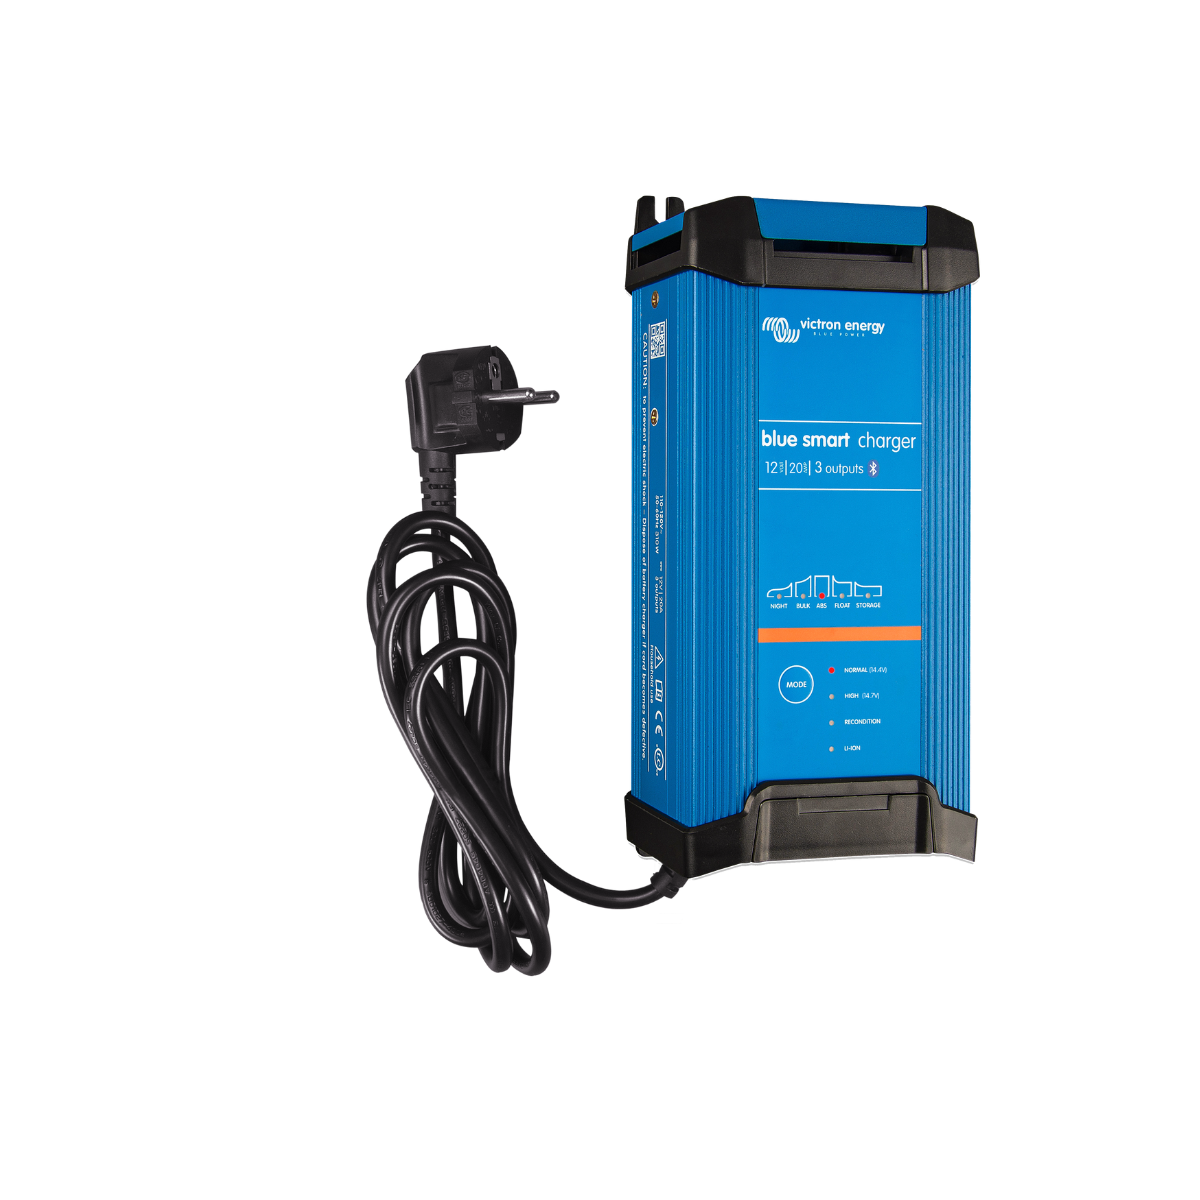 Blue Smart IP22 Charger - 12V/20A (3 Outputs) - 230V UK